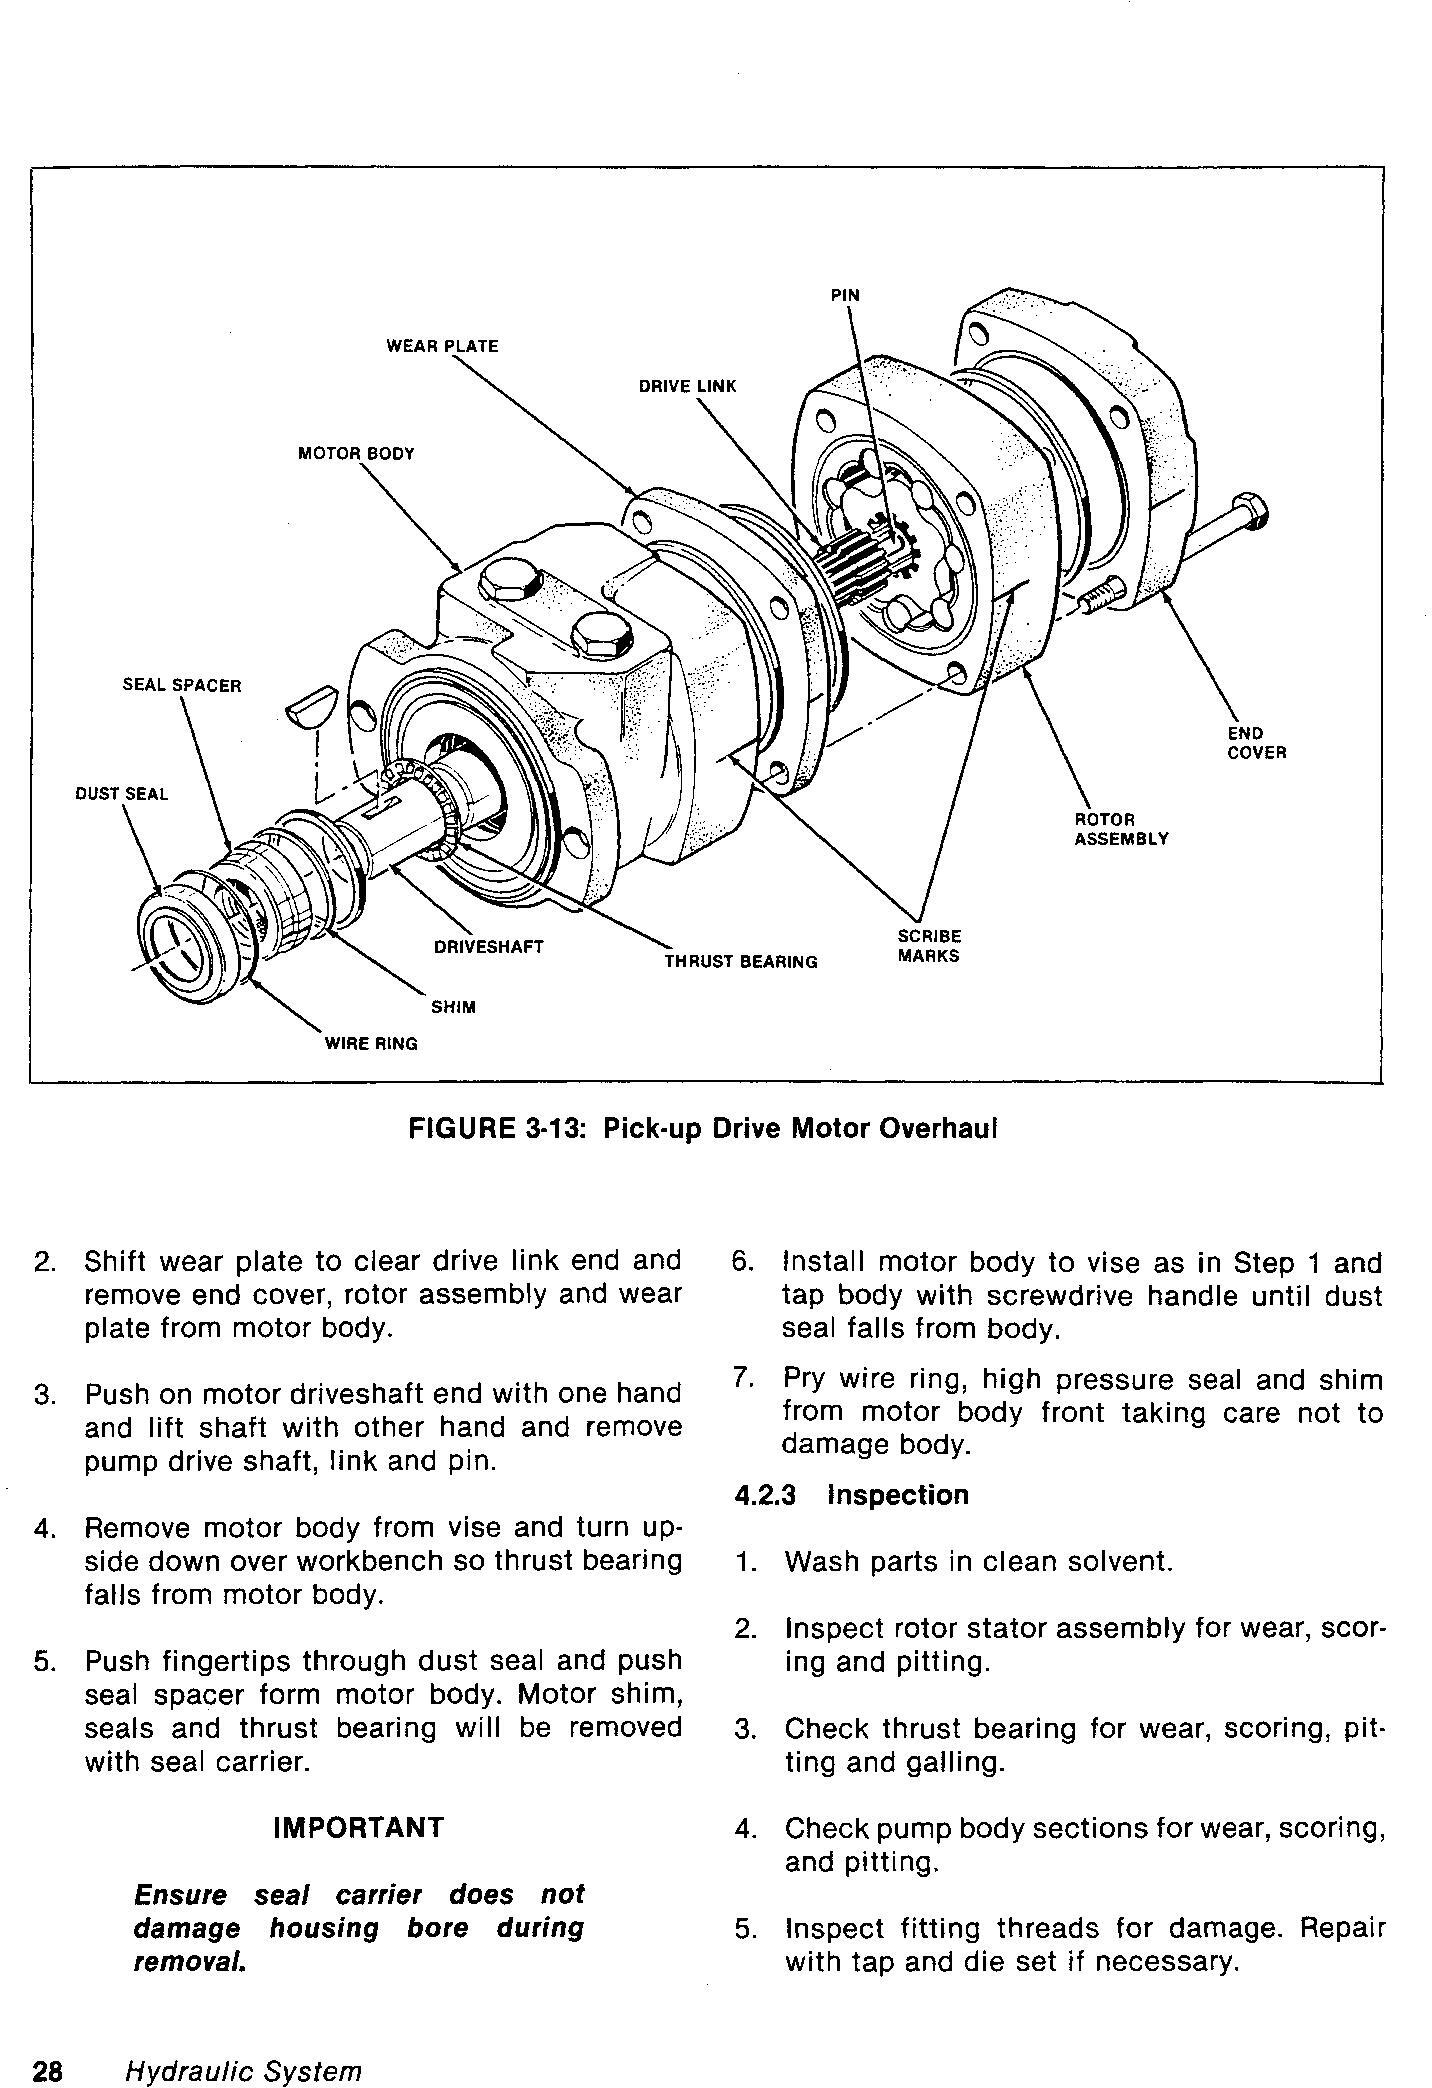 New Holland Versatile 2000 Combine (1985) Service Manual - 3